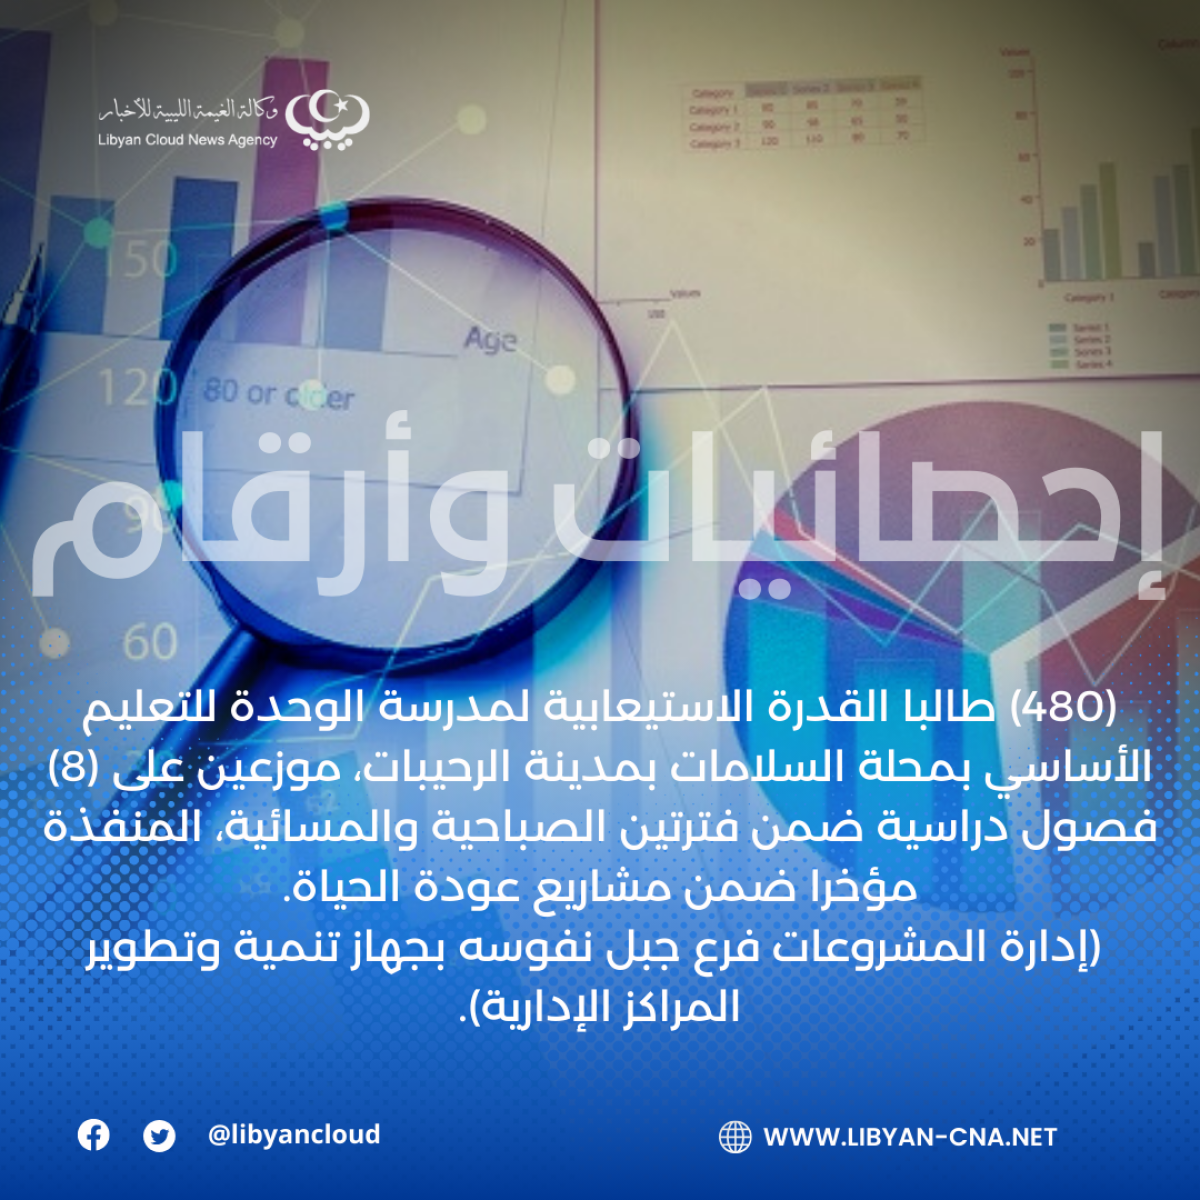 (480) طالبا القدرة الاستيعابية لمدرسة الوحدة للتعليم الأساسي الجديدة بمدينة الرحيبات